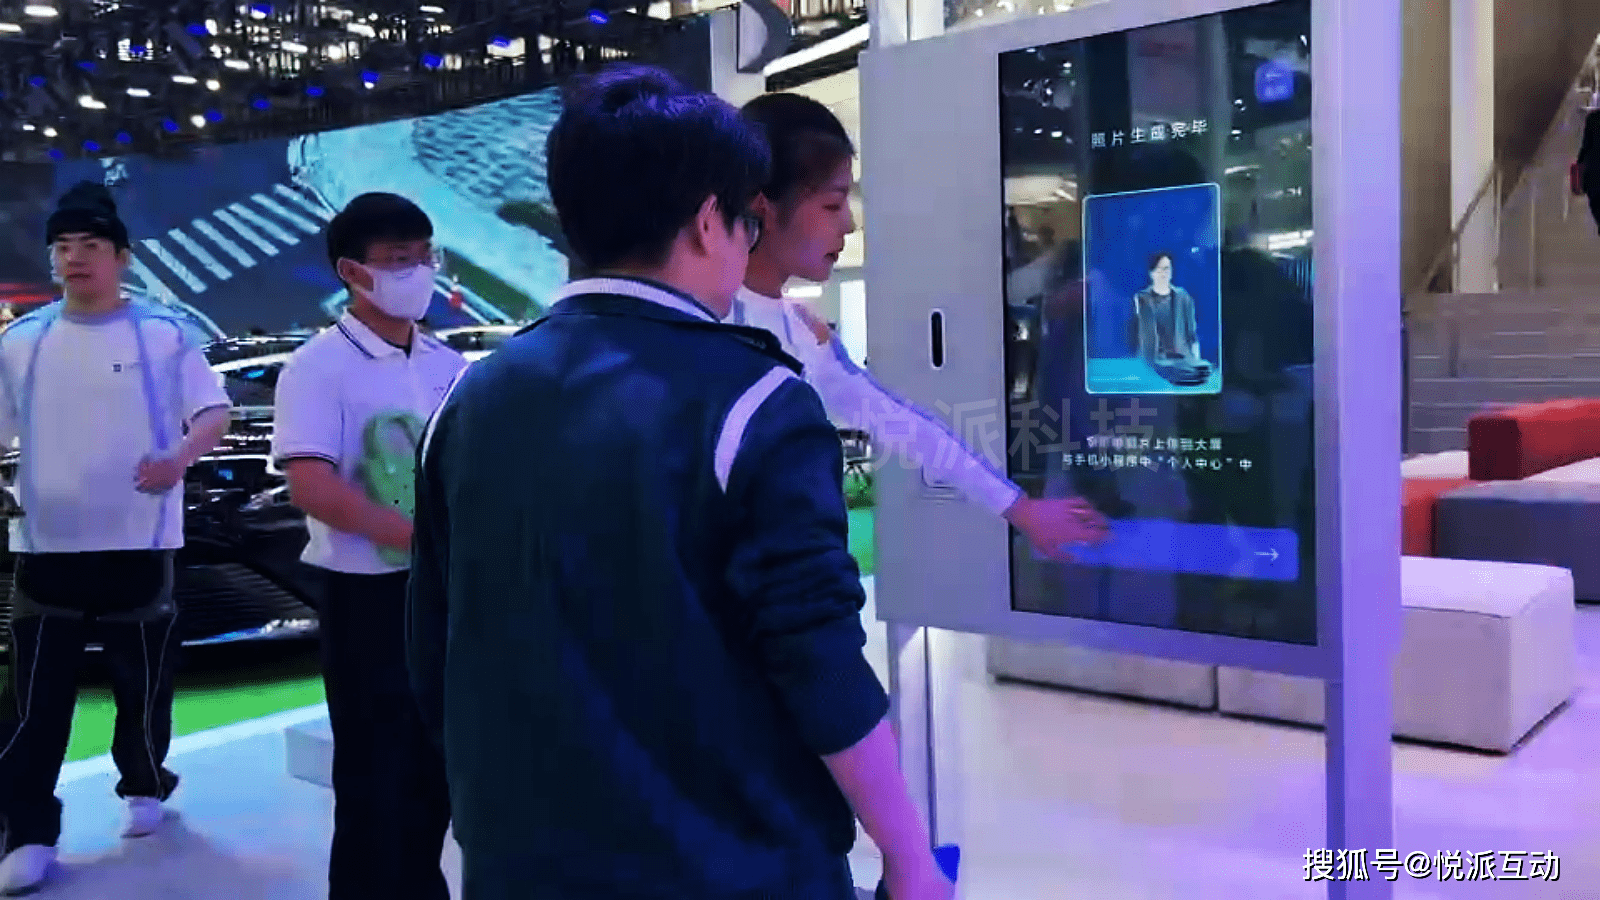 抖音真的互动游戏互动装置北京广告真的激活
:车展创意互动游戏装置激活潮流数字化展台